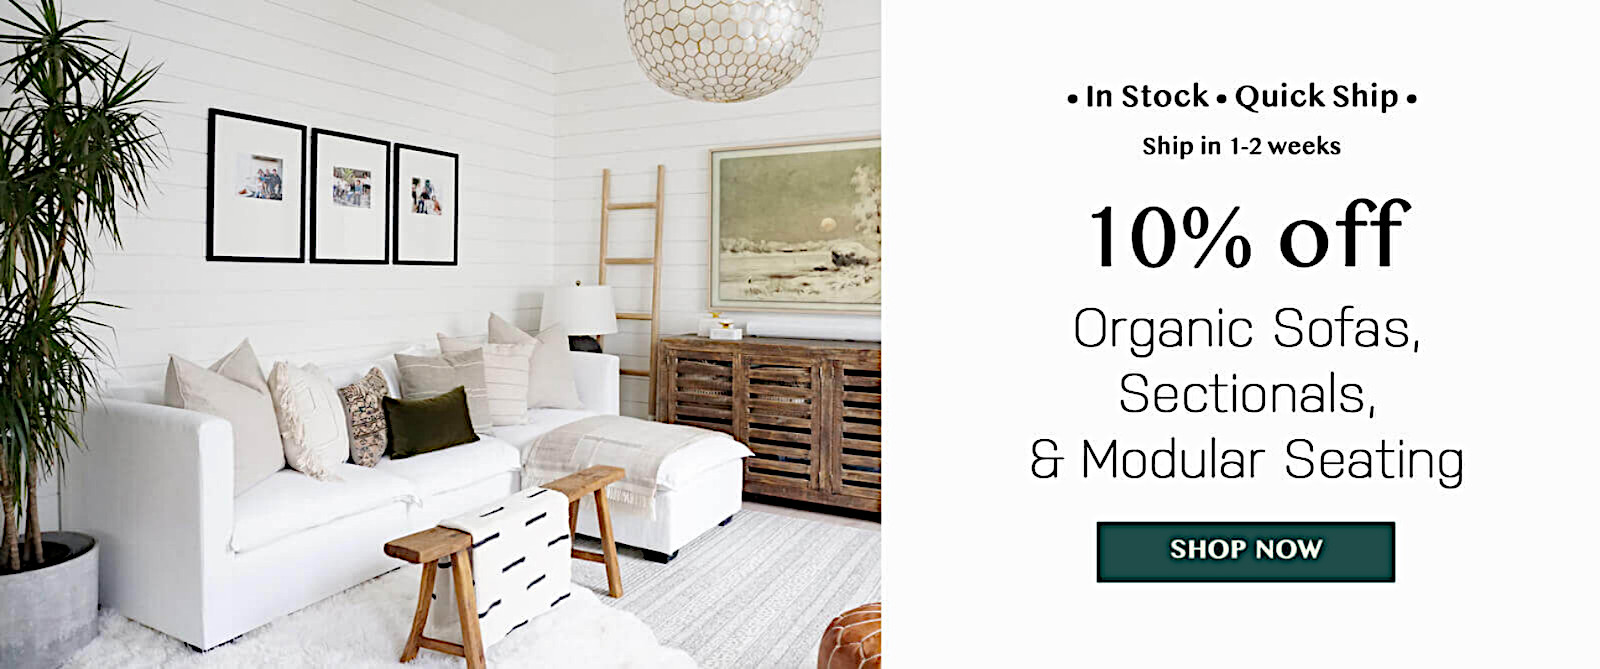 Promo Price organic sofas sectionals modular seating